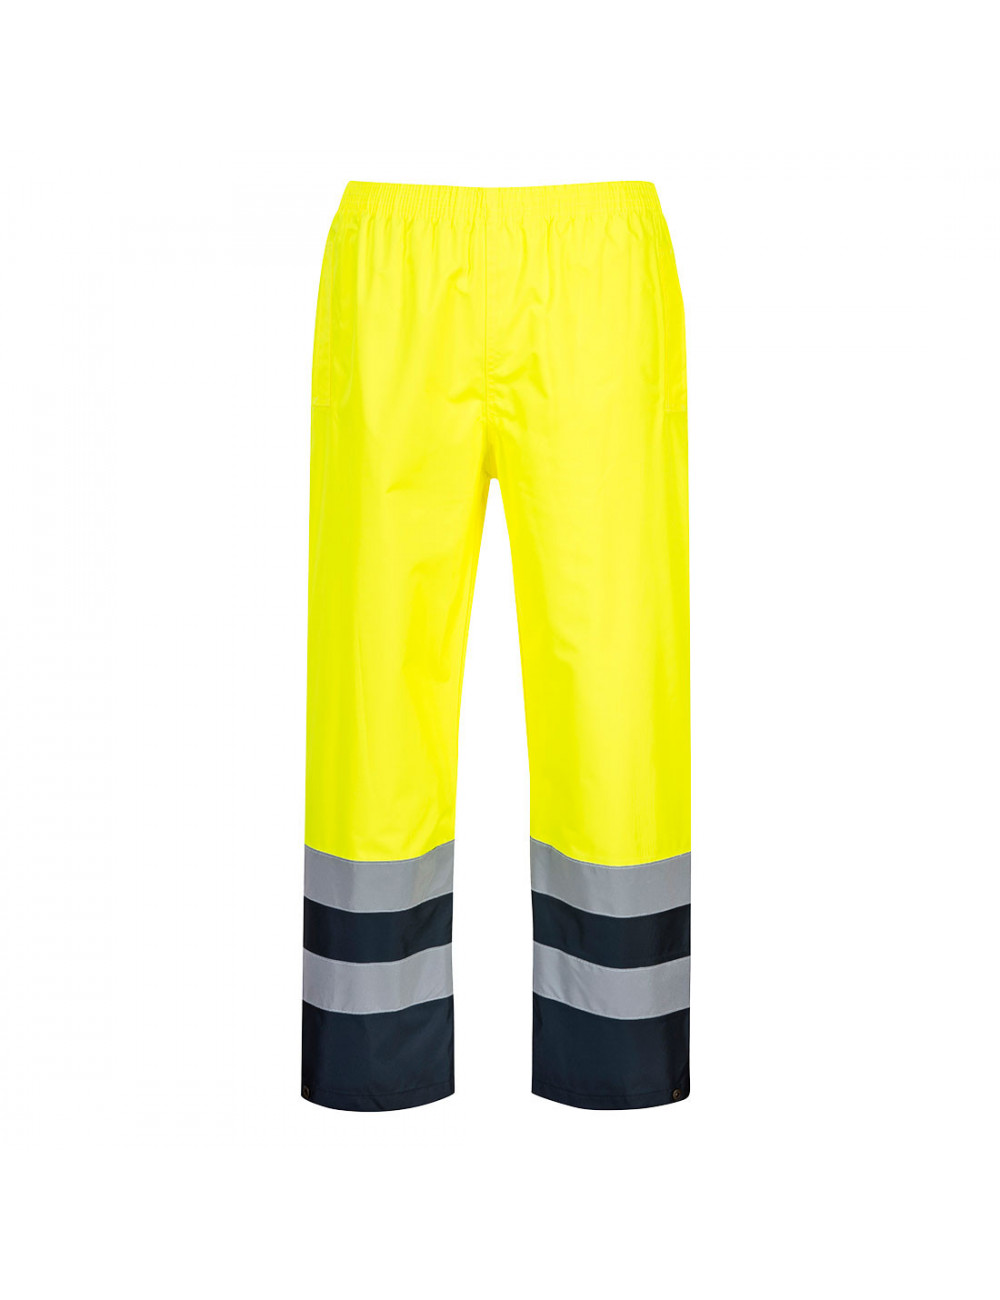 Dwukolorowe spodnie ostrzegawcze traffic żółty Portwest